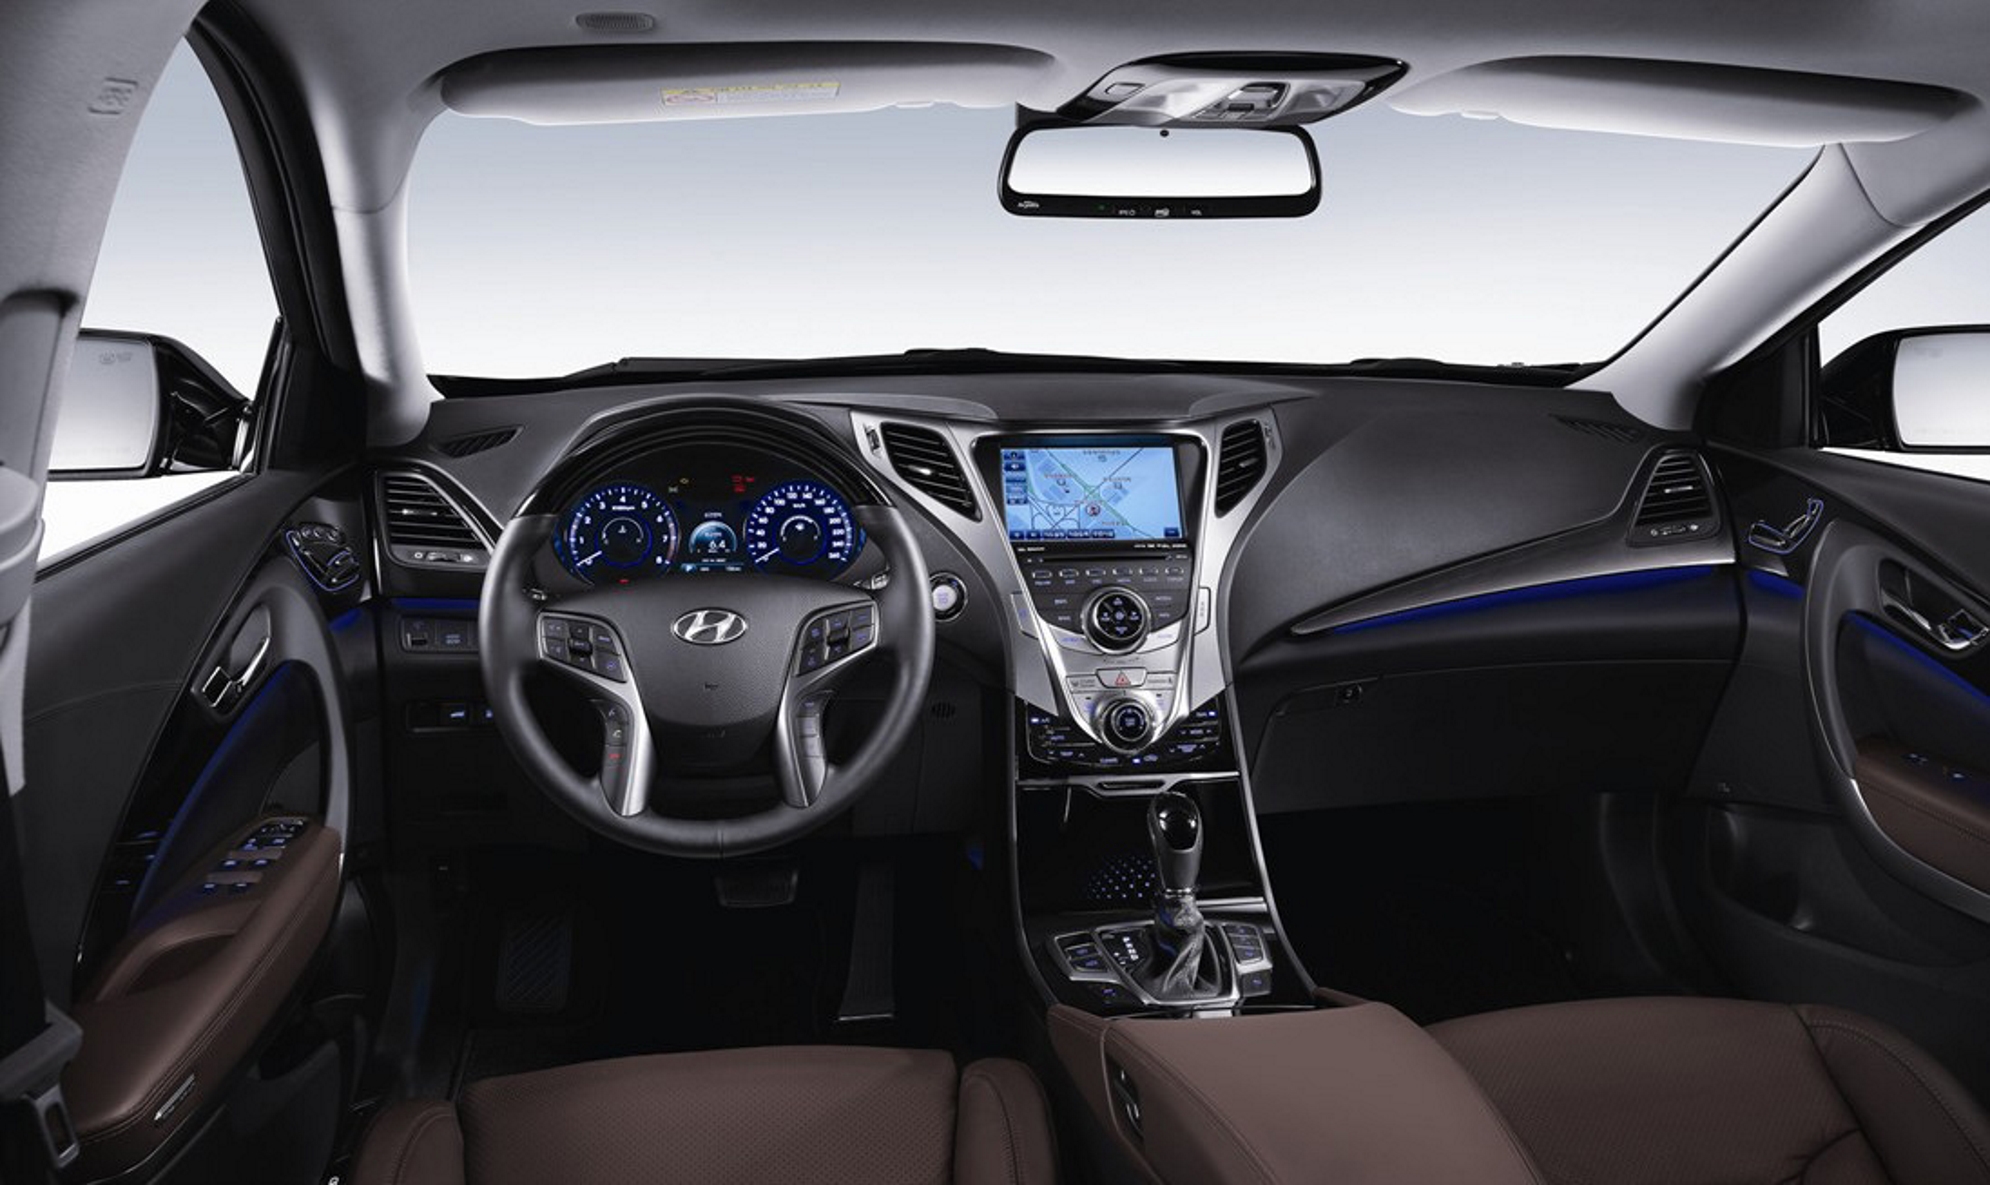 Hyundai Azera prata modelo 2011 interior painel bancos volante no estúdio